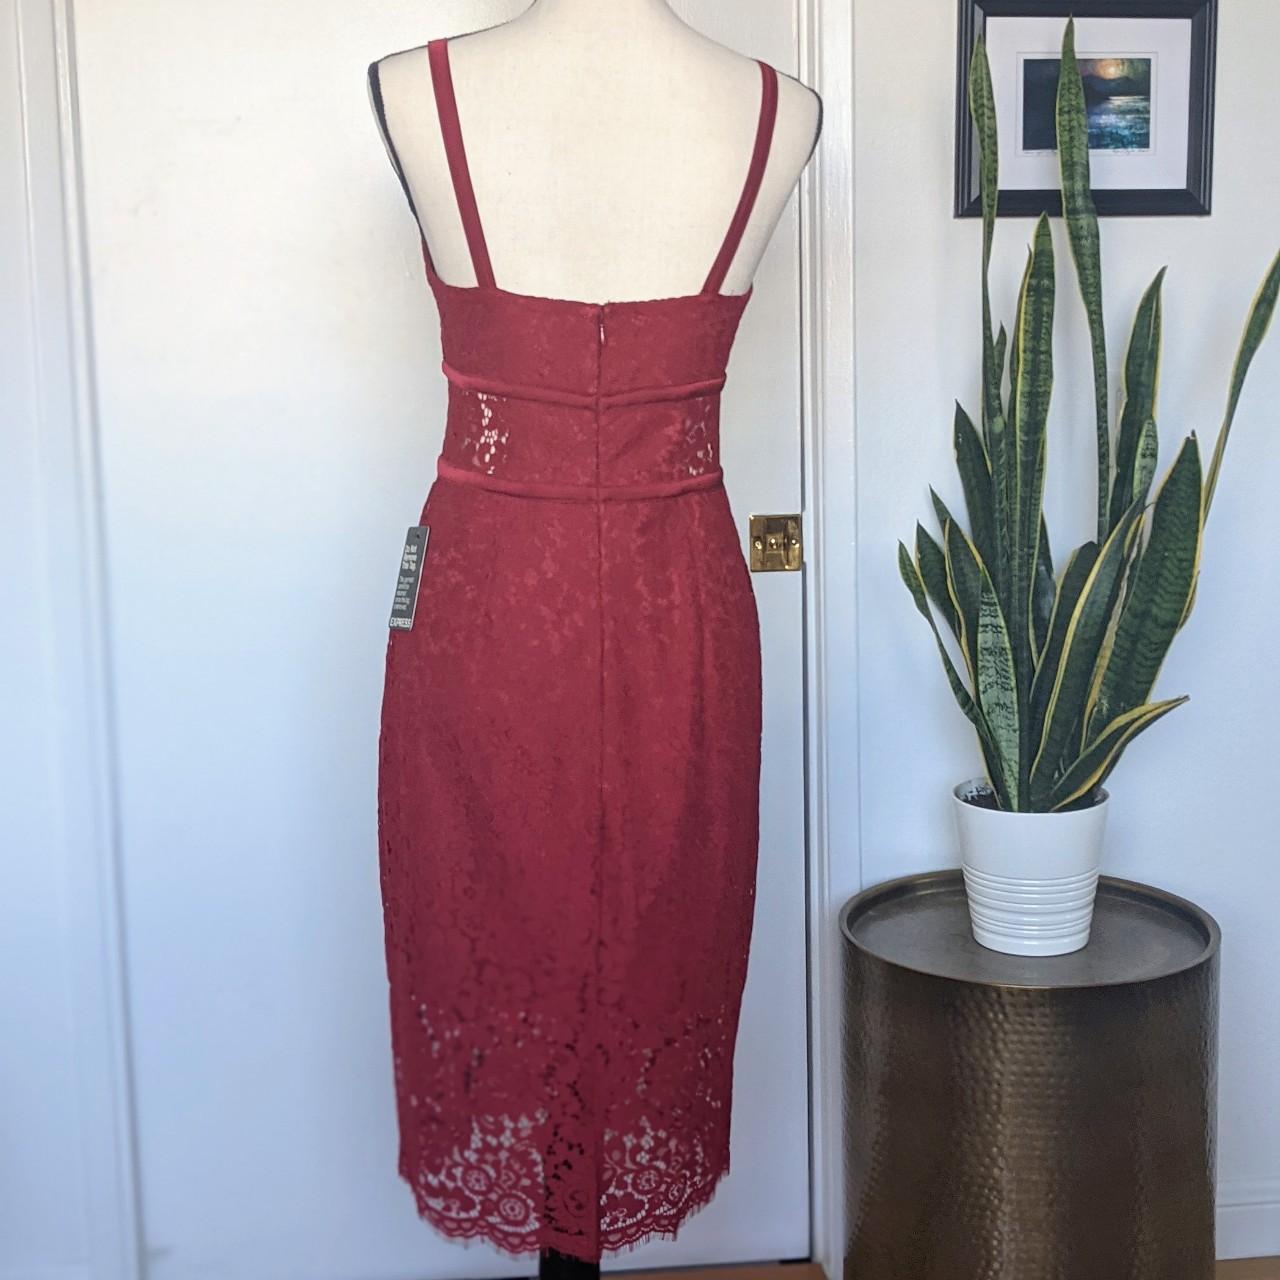 Express Women's Red and Burgundy Dress | Depop